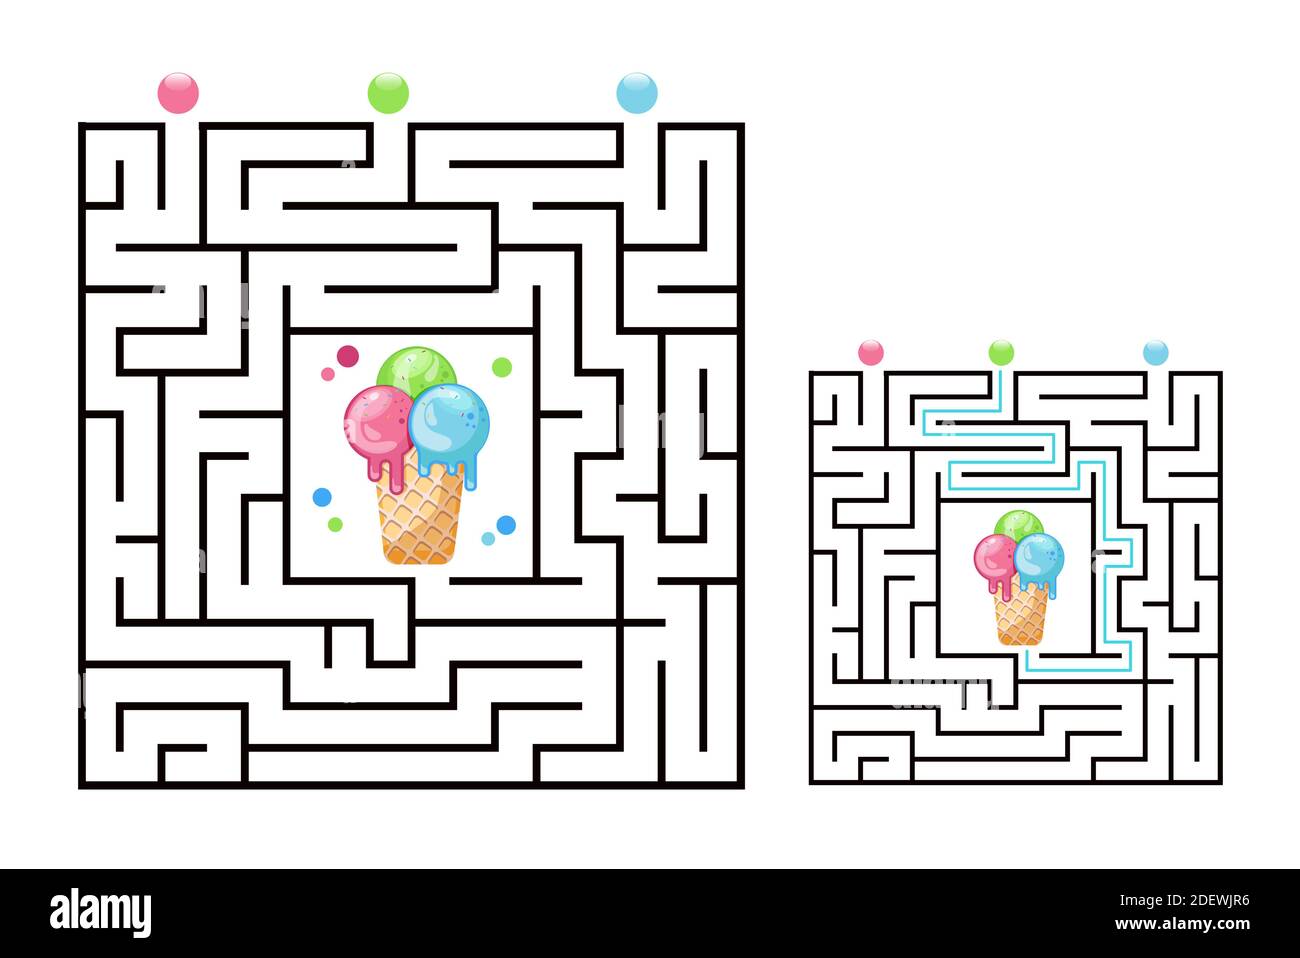 Gioco labirinto quadrato labirinto per bambini con icecream. Logica labirintica. Tre ingressi e una strada a destra per andare. Immagine piatta vettoriale Illustrazione Vettoriale